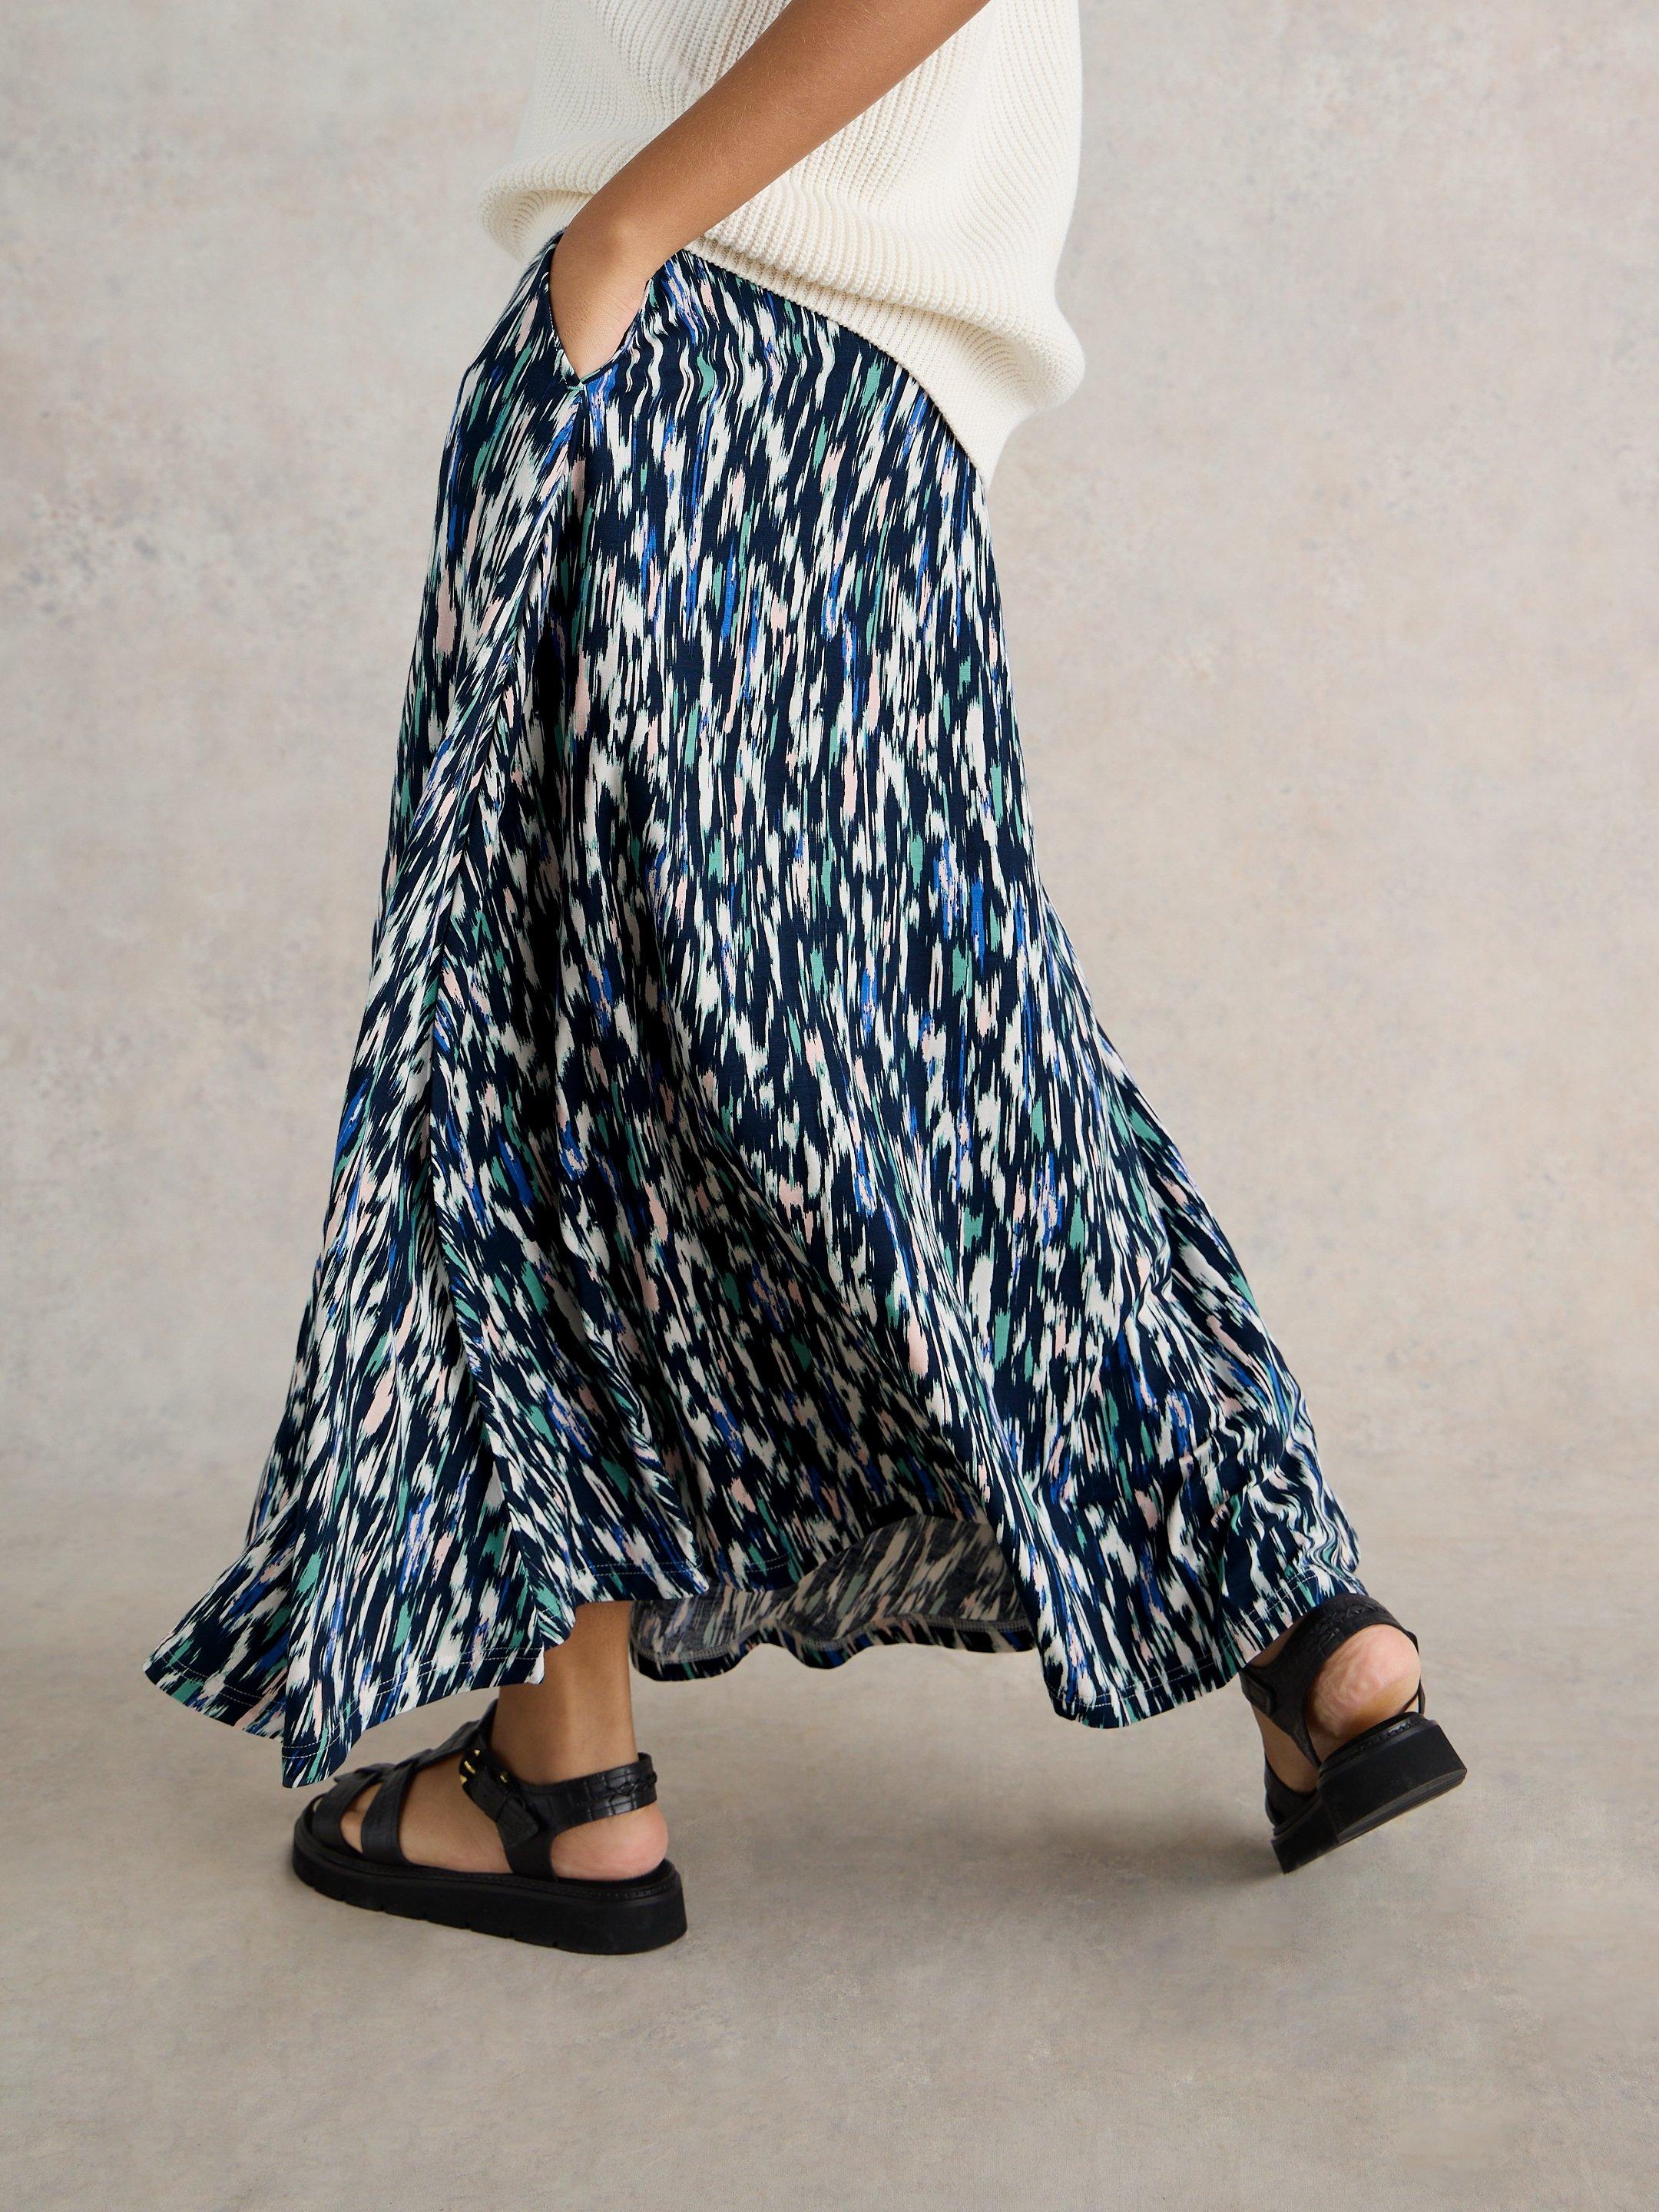 Jada Eco Vero Skirt in NAVY PR - MODEL BACK